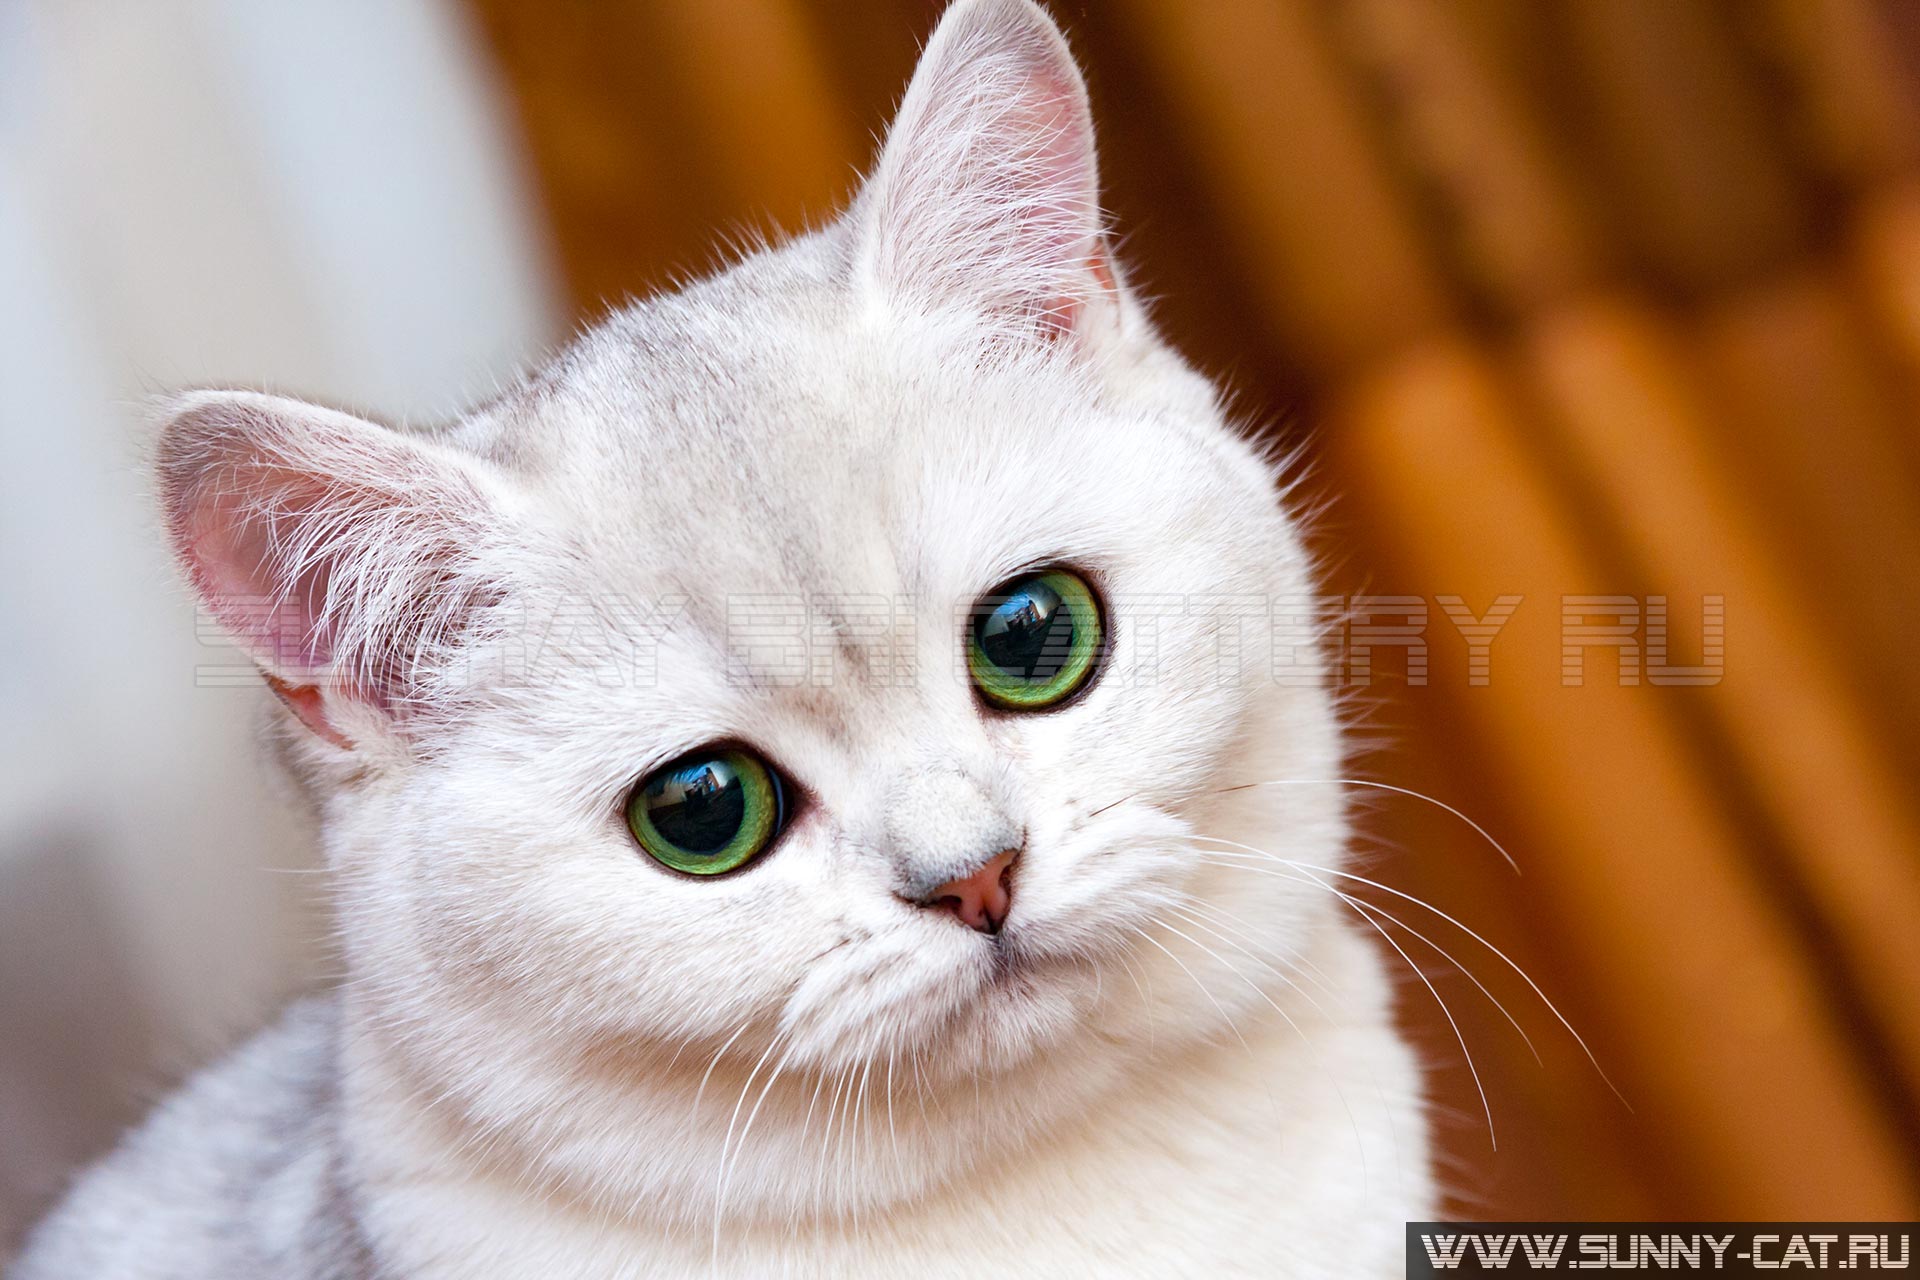 Красивая белая серебристая британская кошка с зелеными глазами смотрит в камеру, портрет мордочки кошки крупным планом.